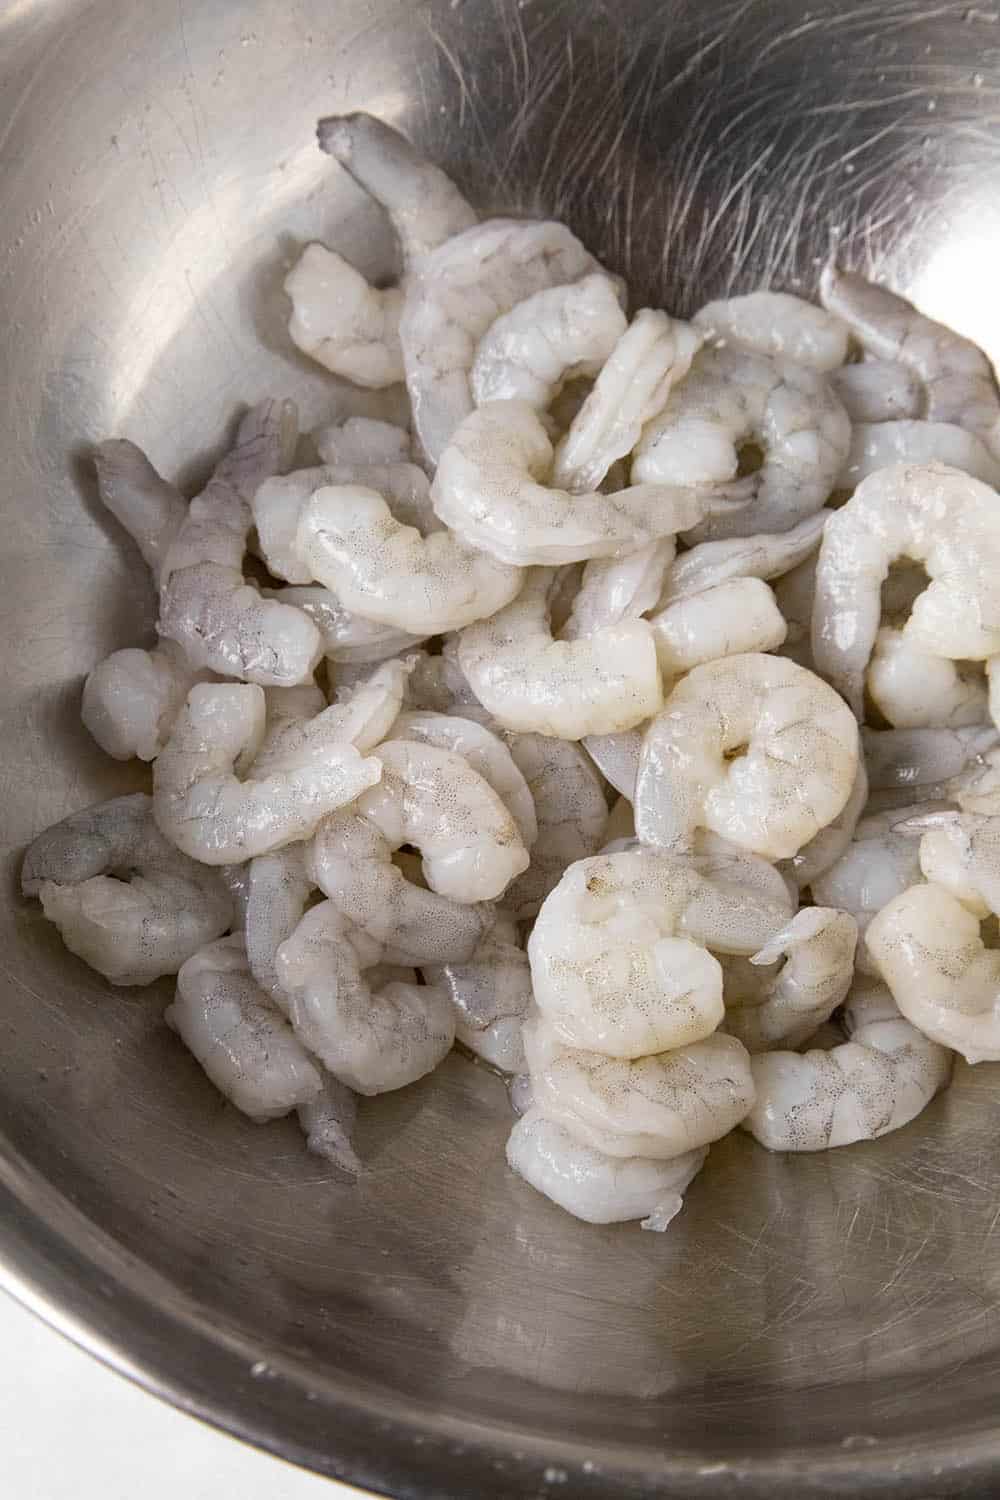 Shrimp in a bowl